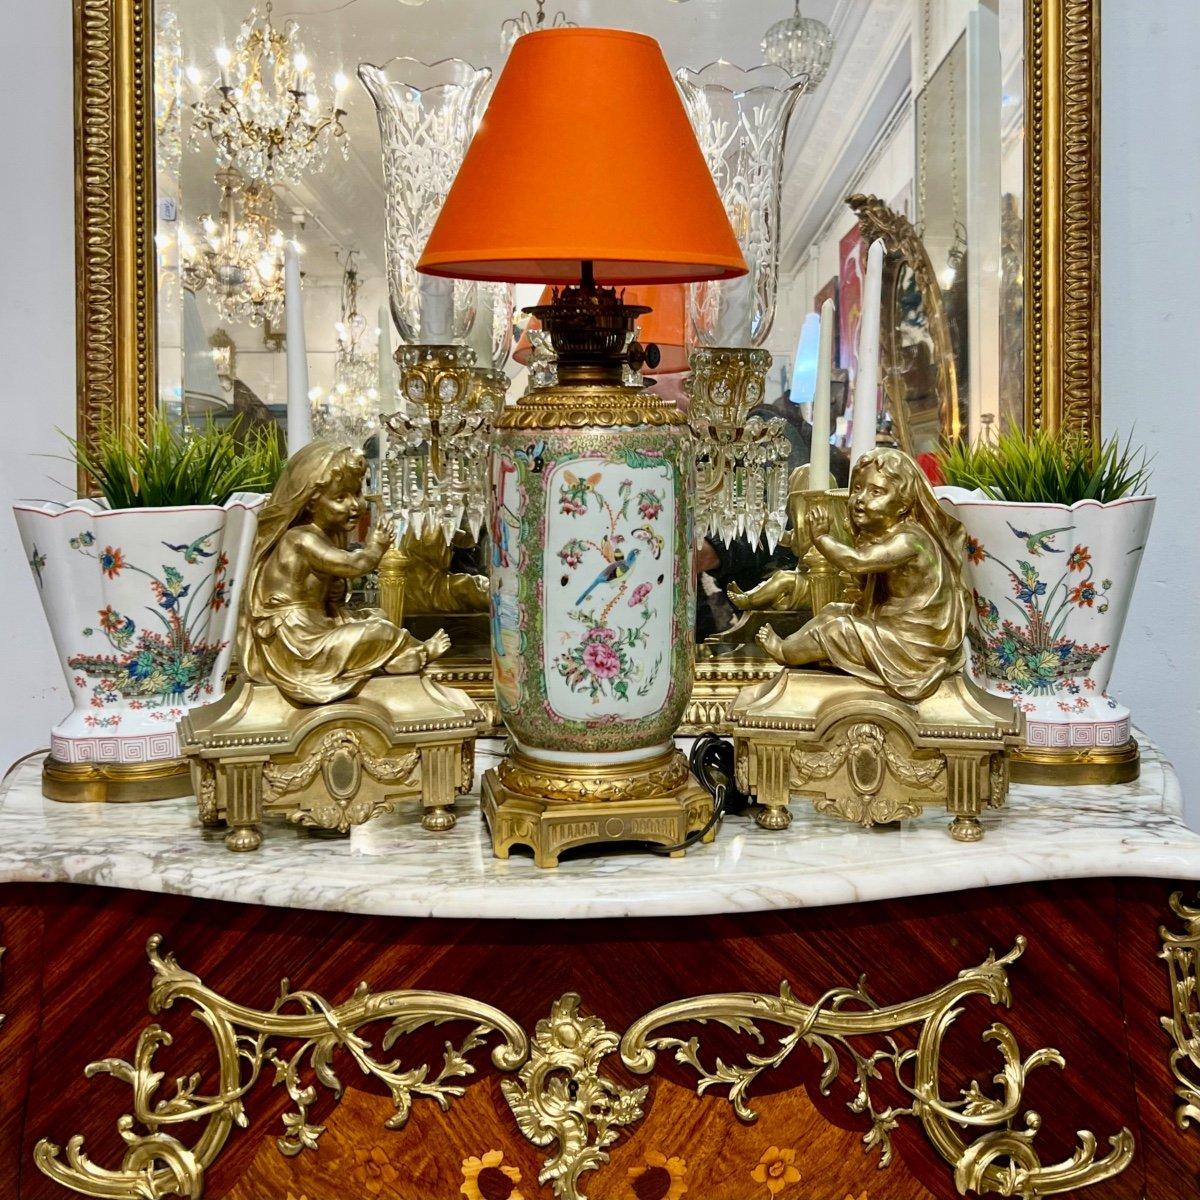 Nous vous présentons cette lampe cantonaise en porcelaine de forme cylindrique, de taille impressionnante, datant de l'époque de Napoléon III. Le cartouche comporte des images de premier plan représentant des scènes de la vie du palais impérial